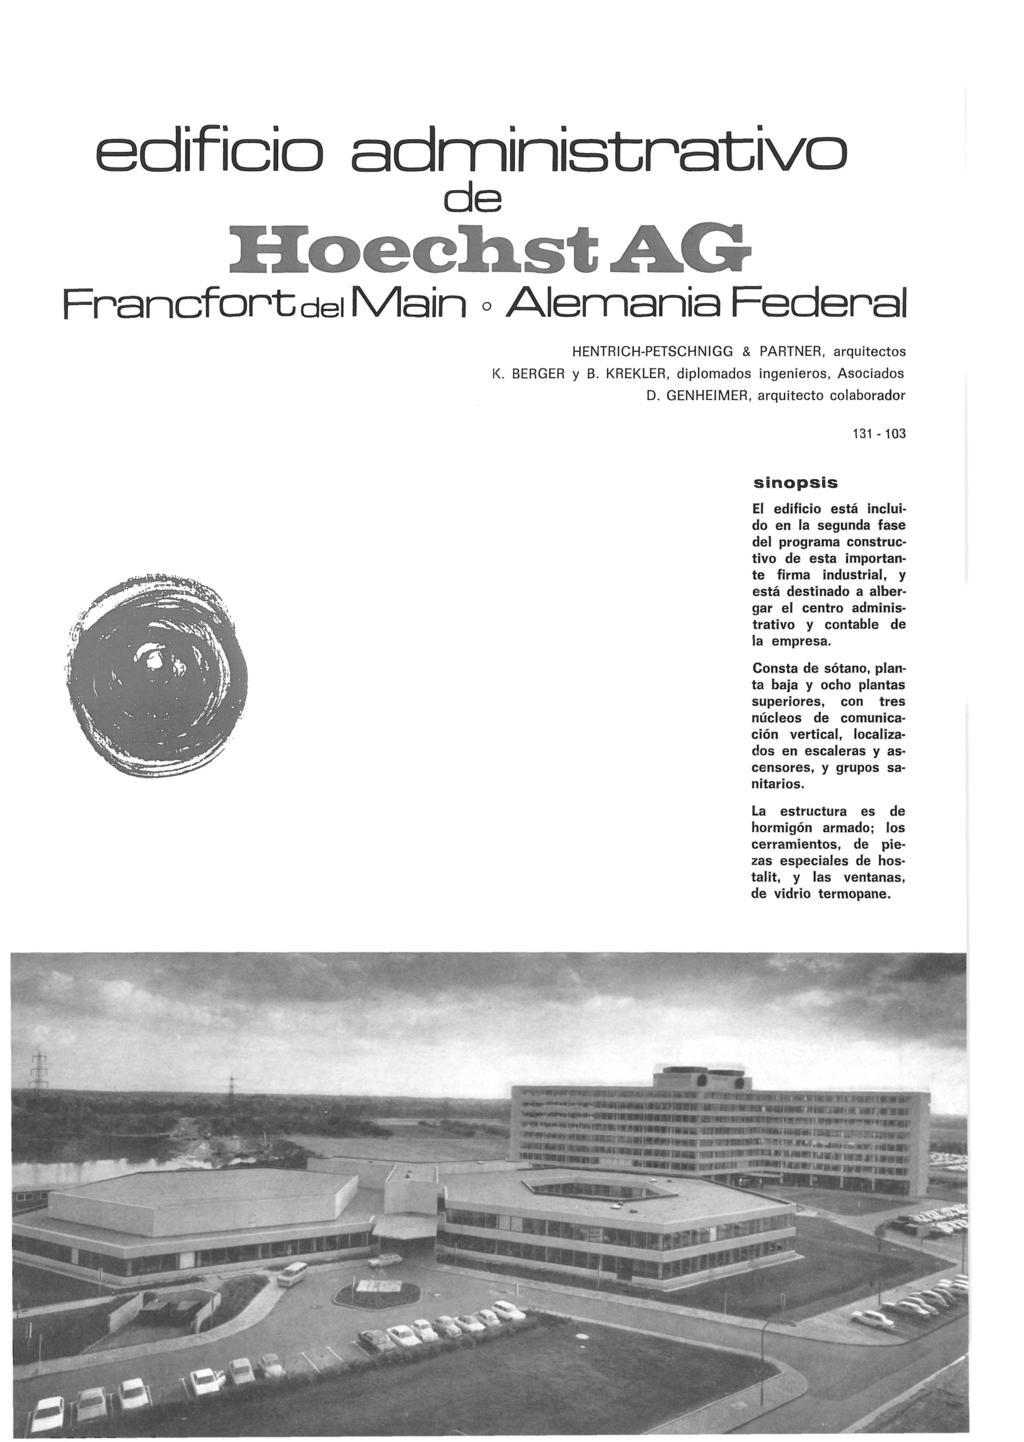 Informes de la Construcción Vol. 27, nº 268 Marzo de 1975 edificio administrativo de F r a n c f o r t del M a i n o Alemania Federal HENTRICH-PETSCHNIGG & PARTNER, arquitectos K. BERGER y B.